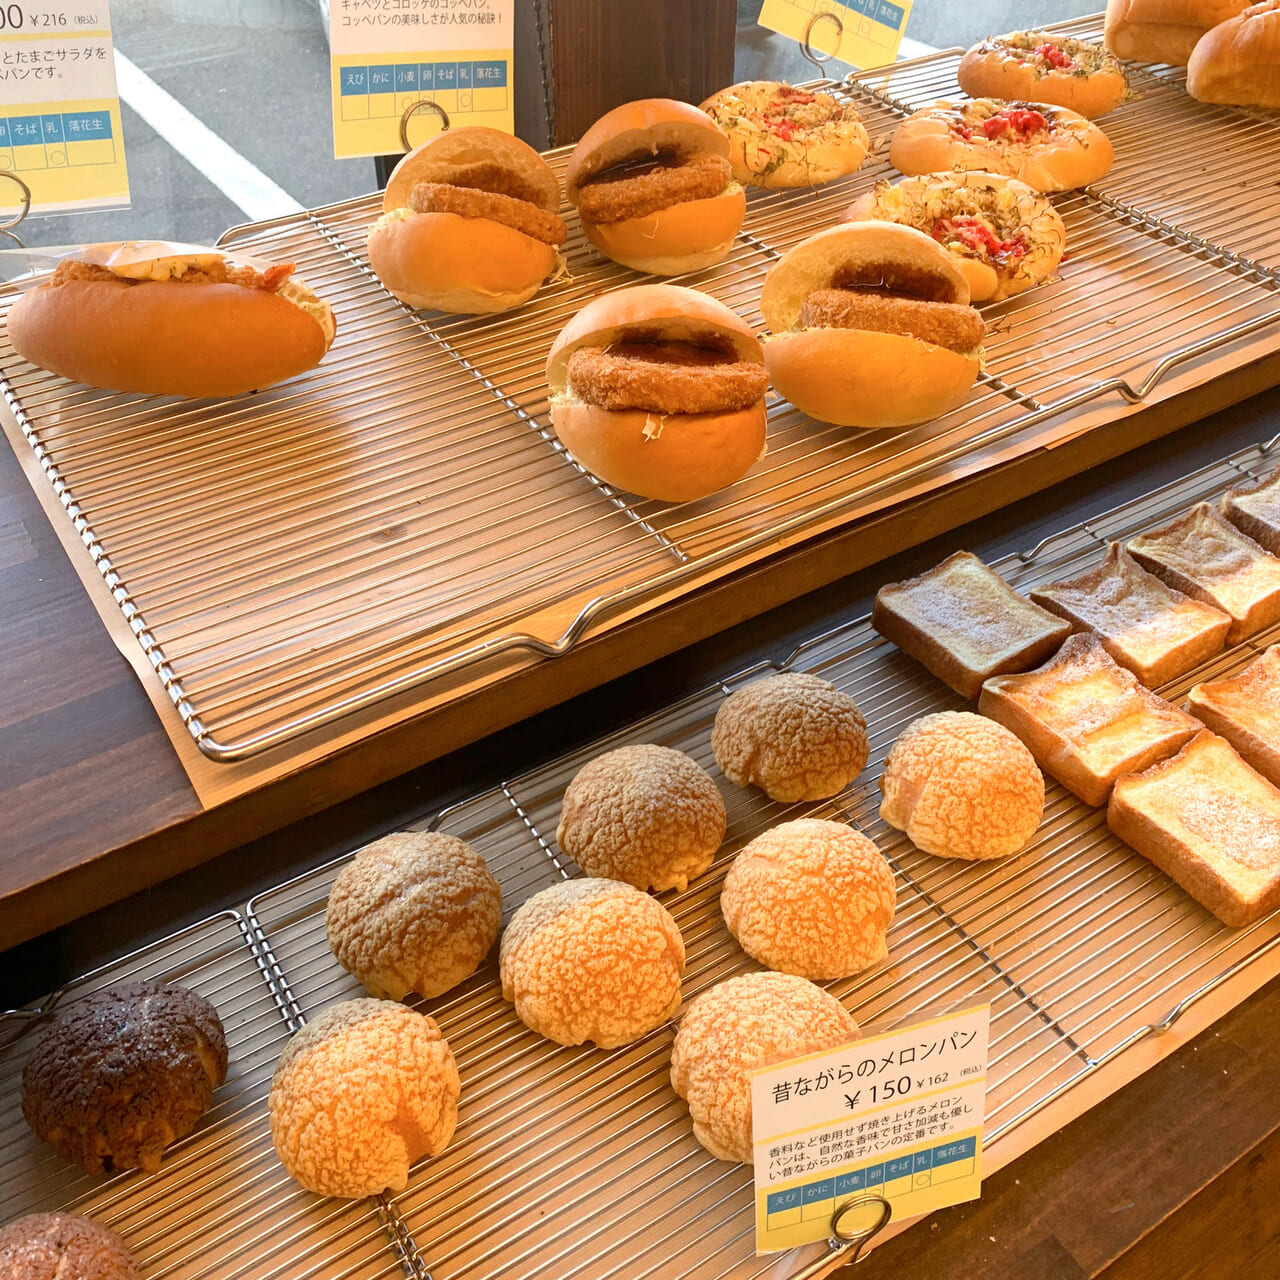 別名にあるパン屋「Pao」の金時クリームパンはテレビ番組ヒルナンデスに取り上げられた程人気の商品です!!